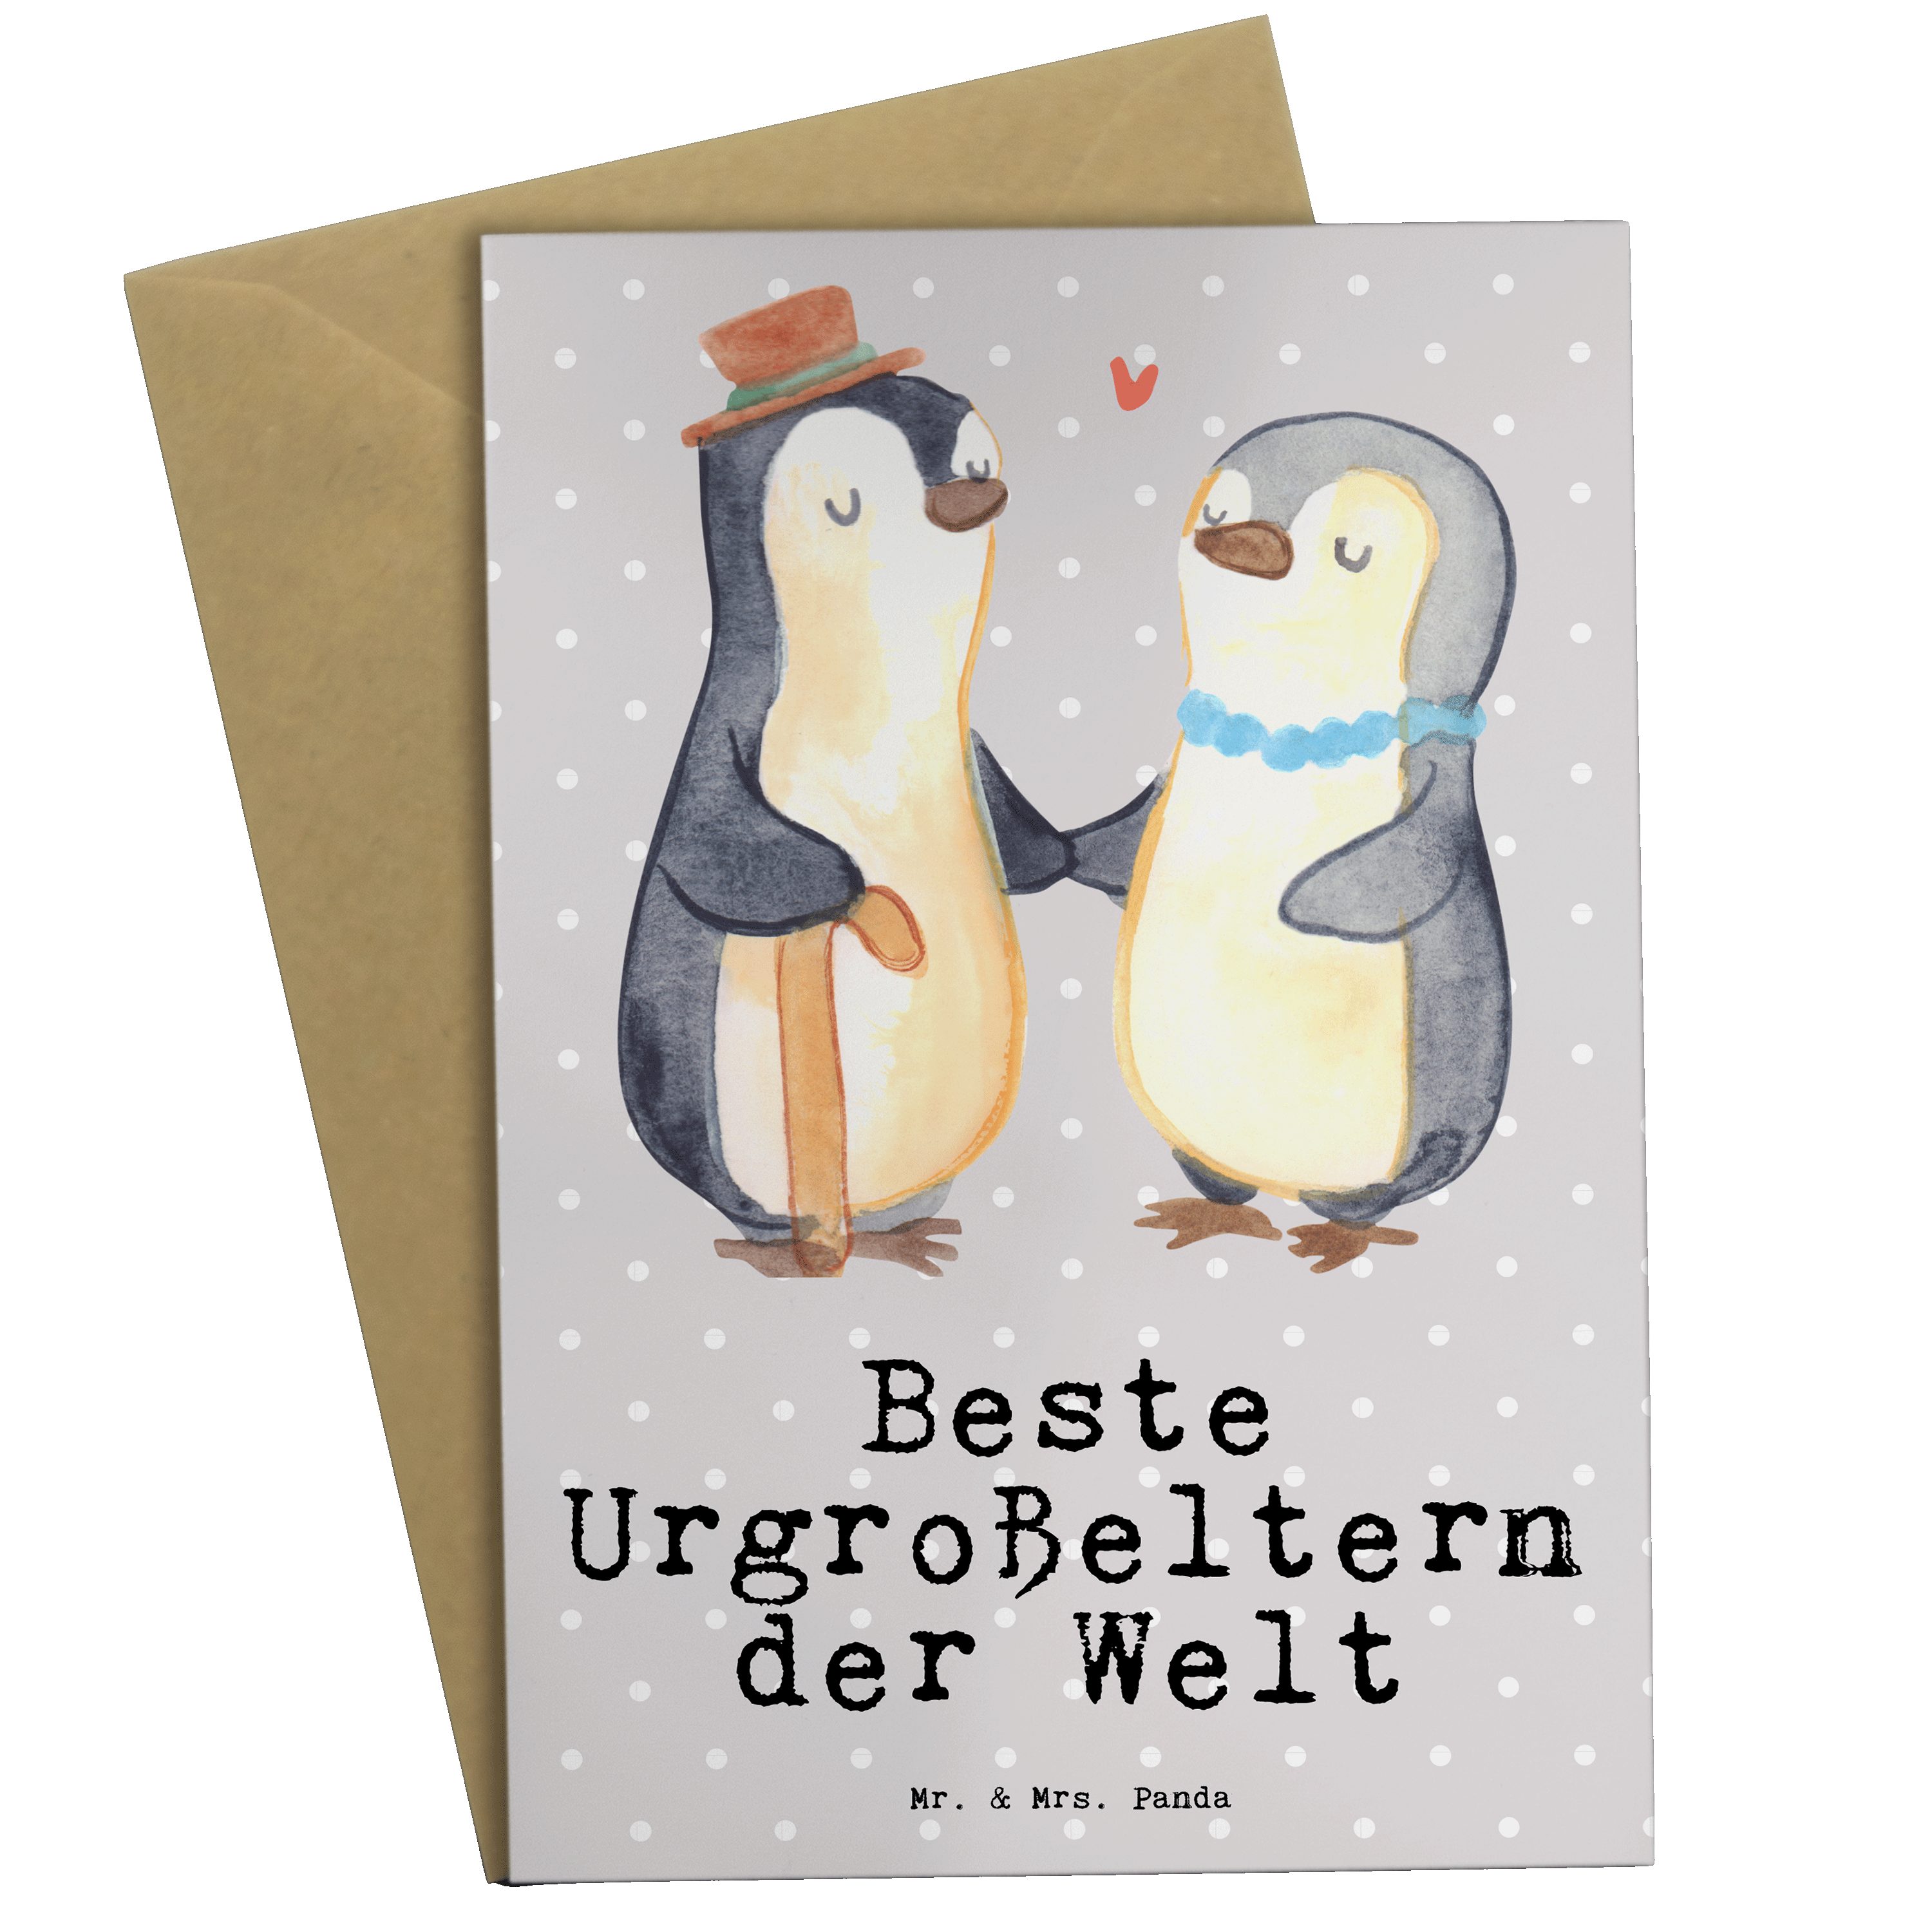 Mr. & Mrs. Panda Grußkarte Pinguin Beste Urgroßeltern der Welt - Grau Pastell - Geschenk, Glückw